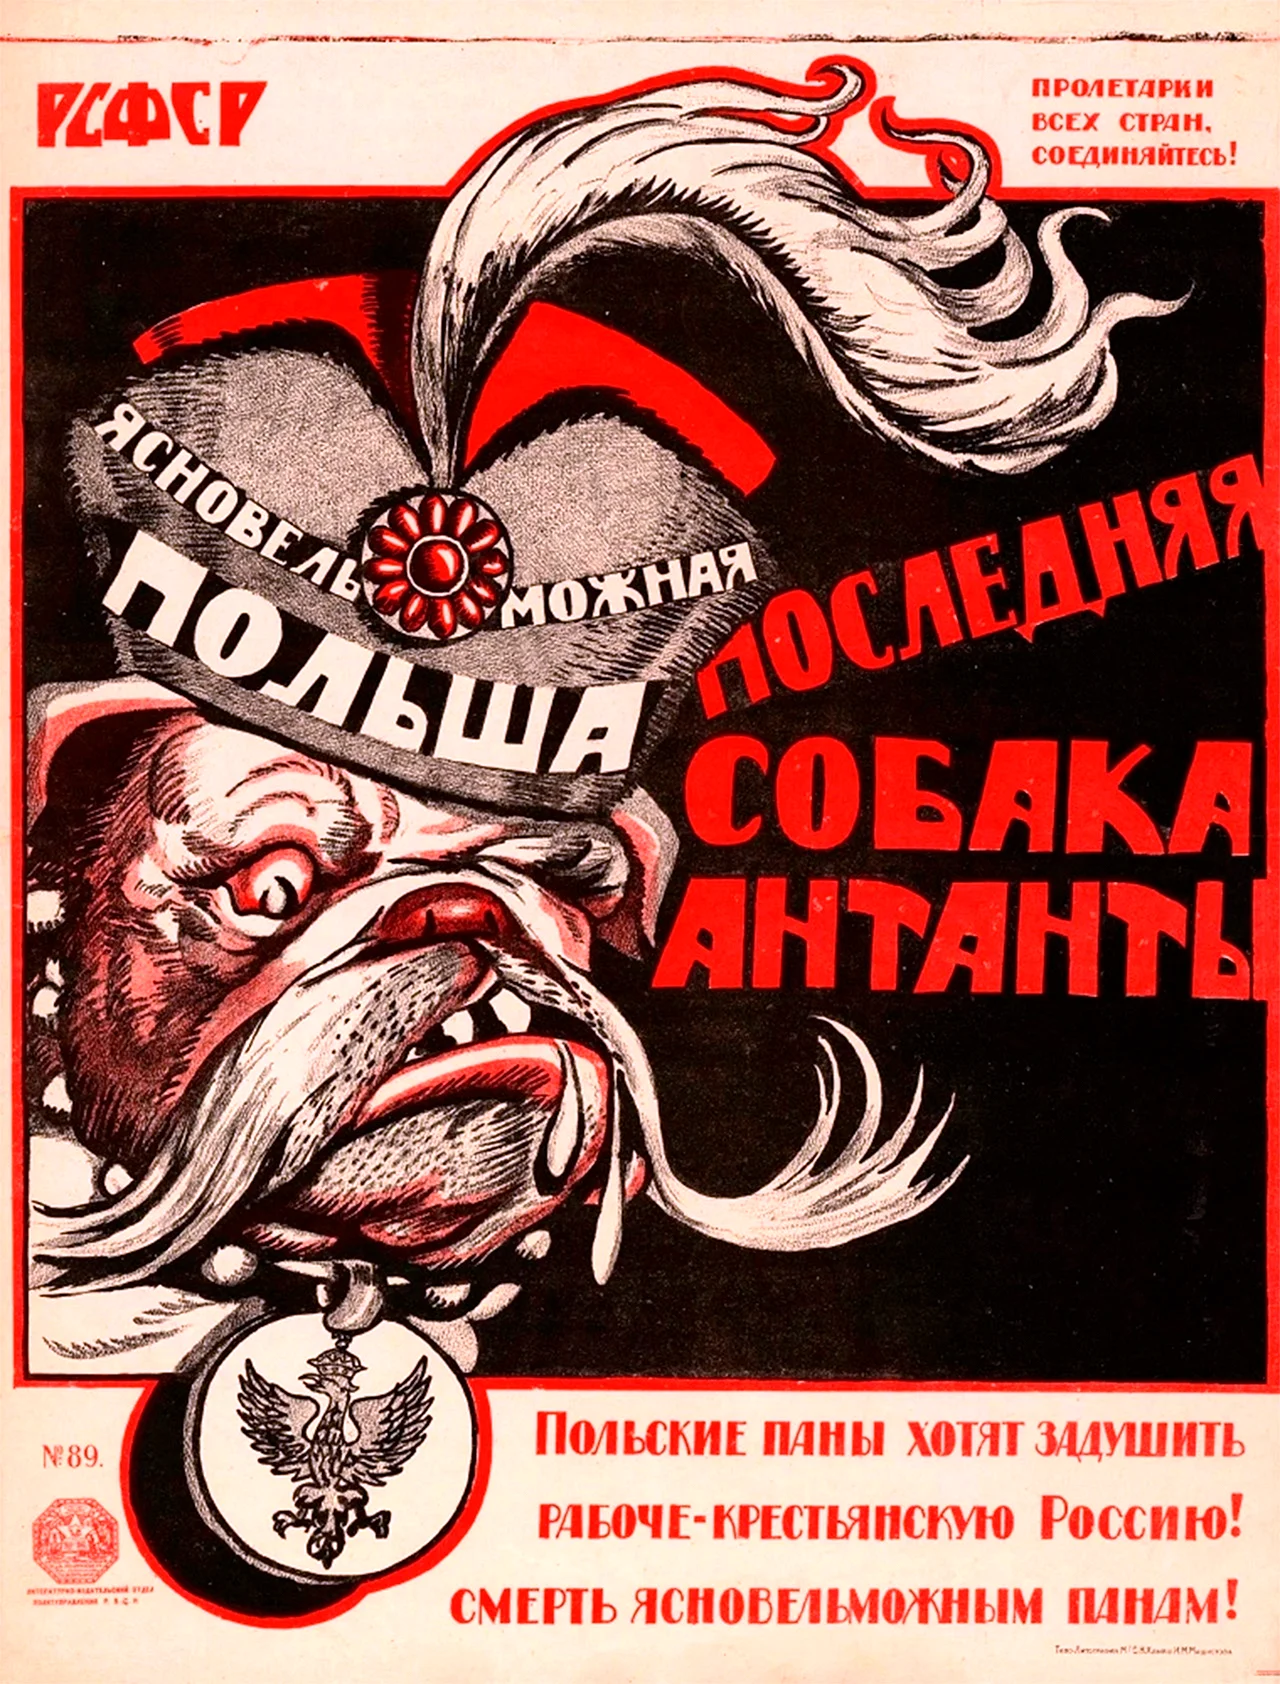 Польские плакаты времен советско-польской войны